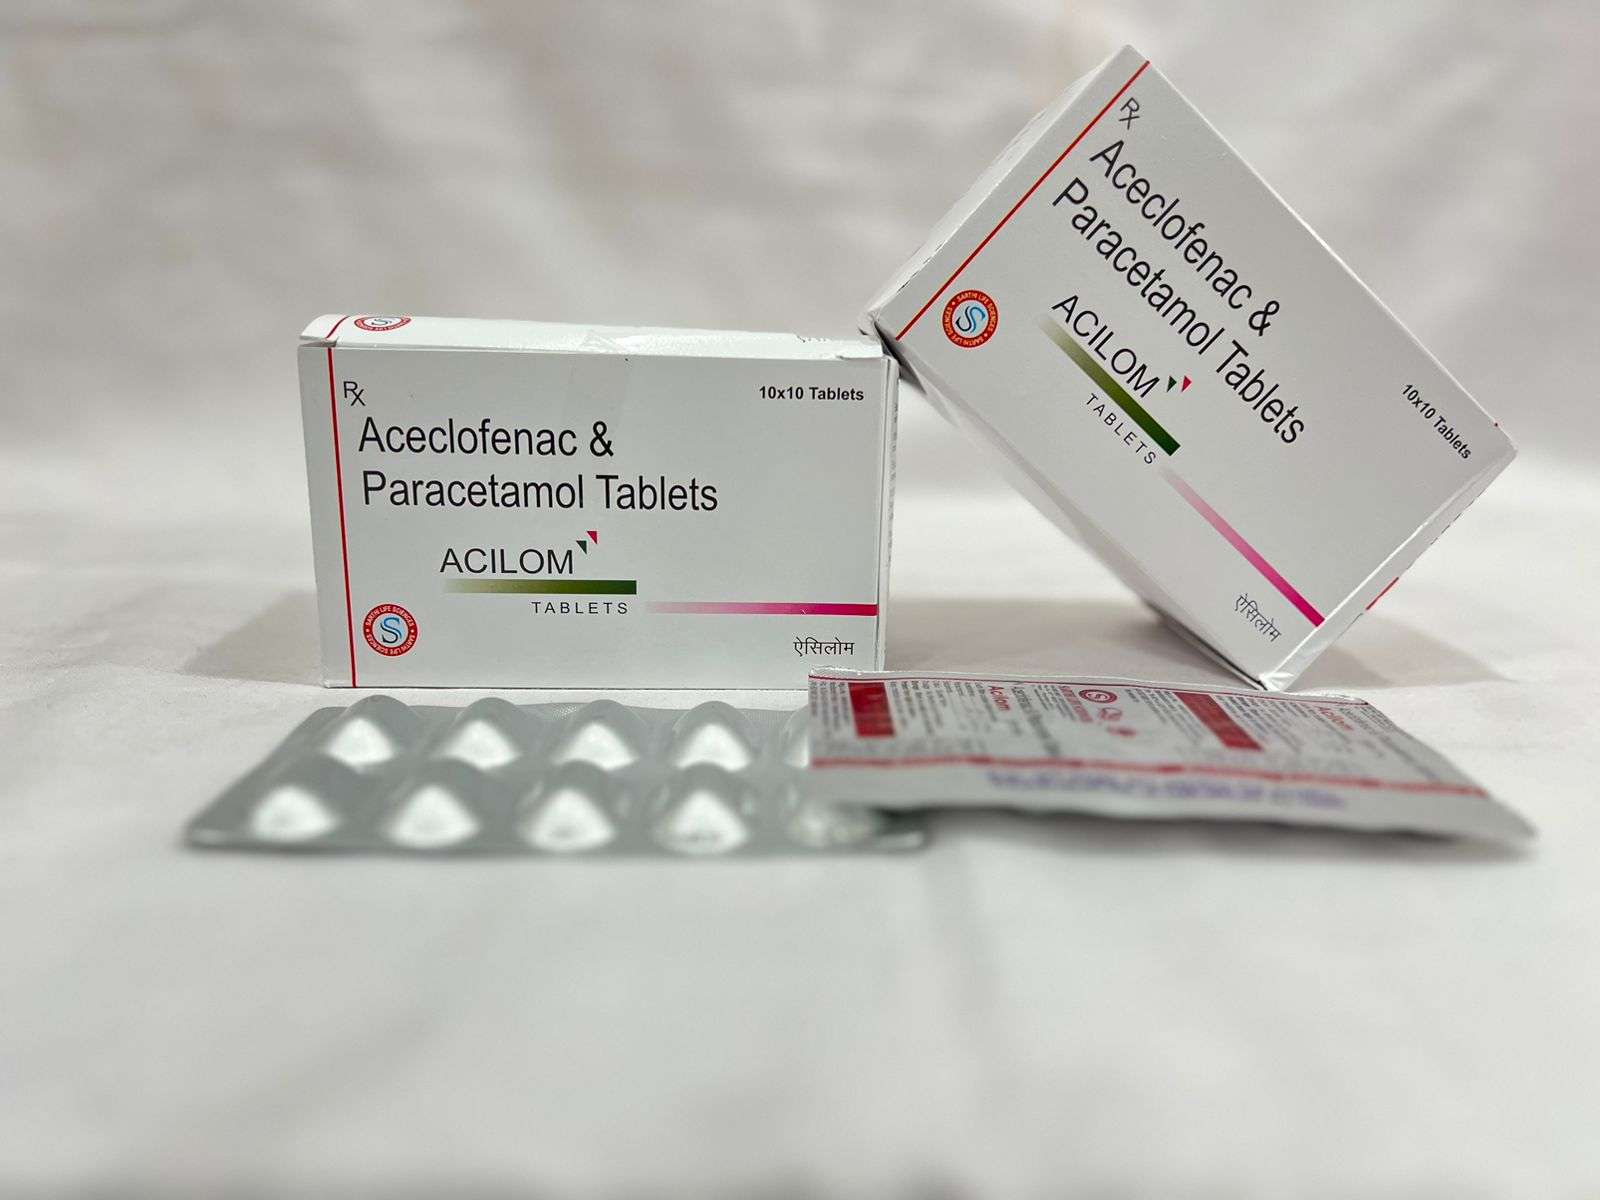 aceclofenac 100 mg + paracetamol
325mg